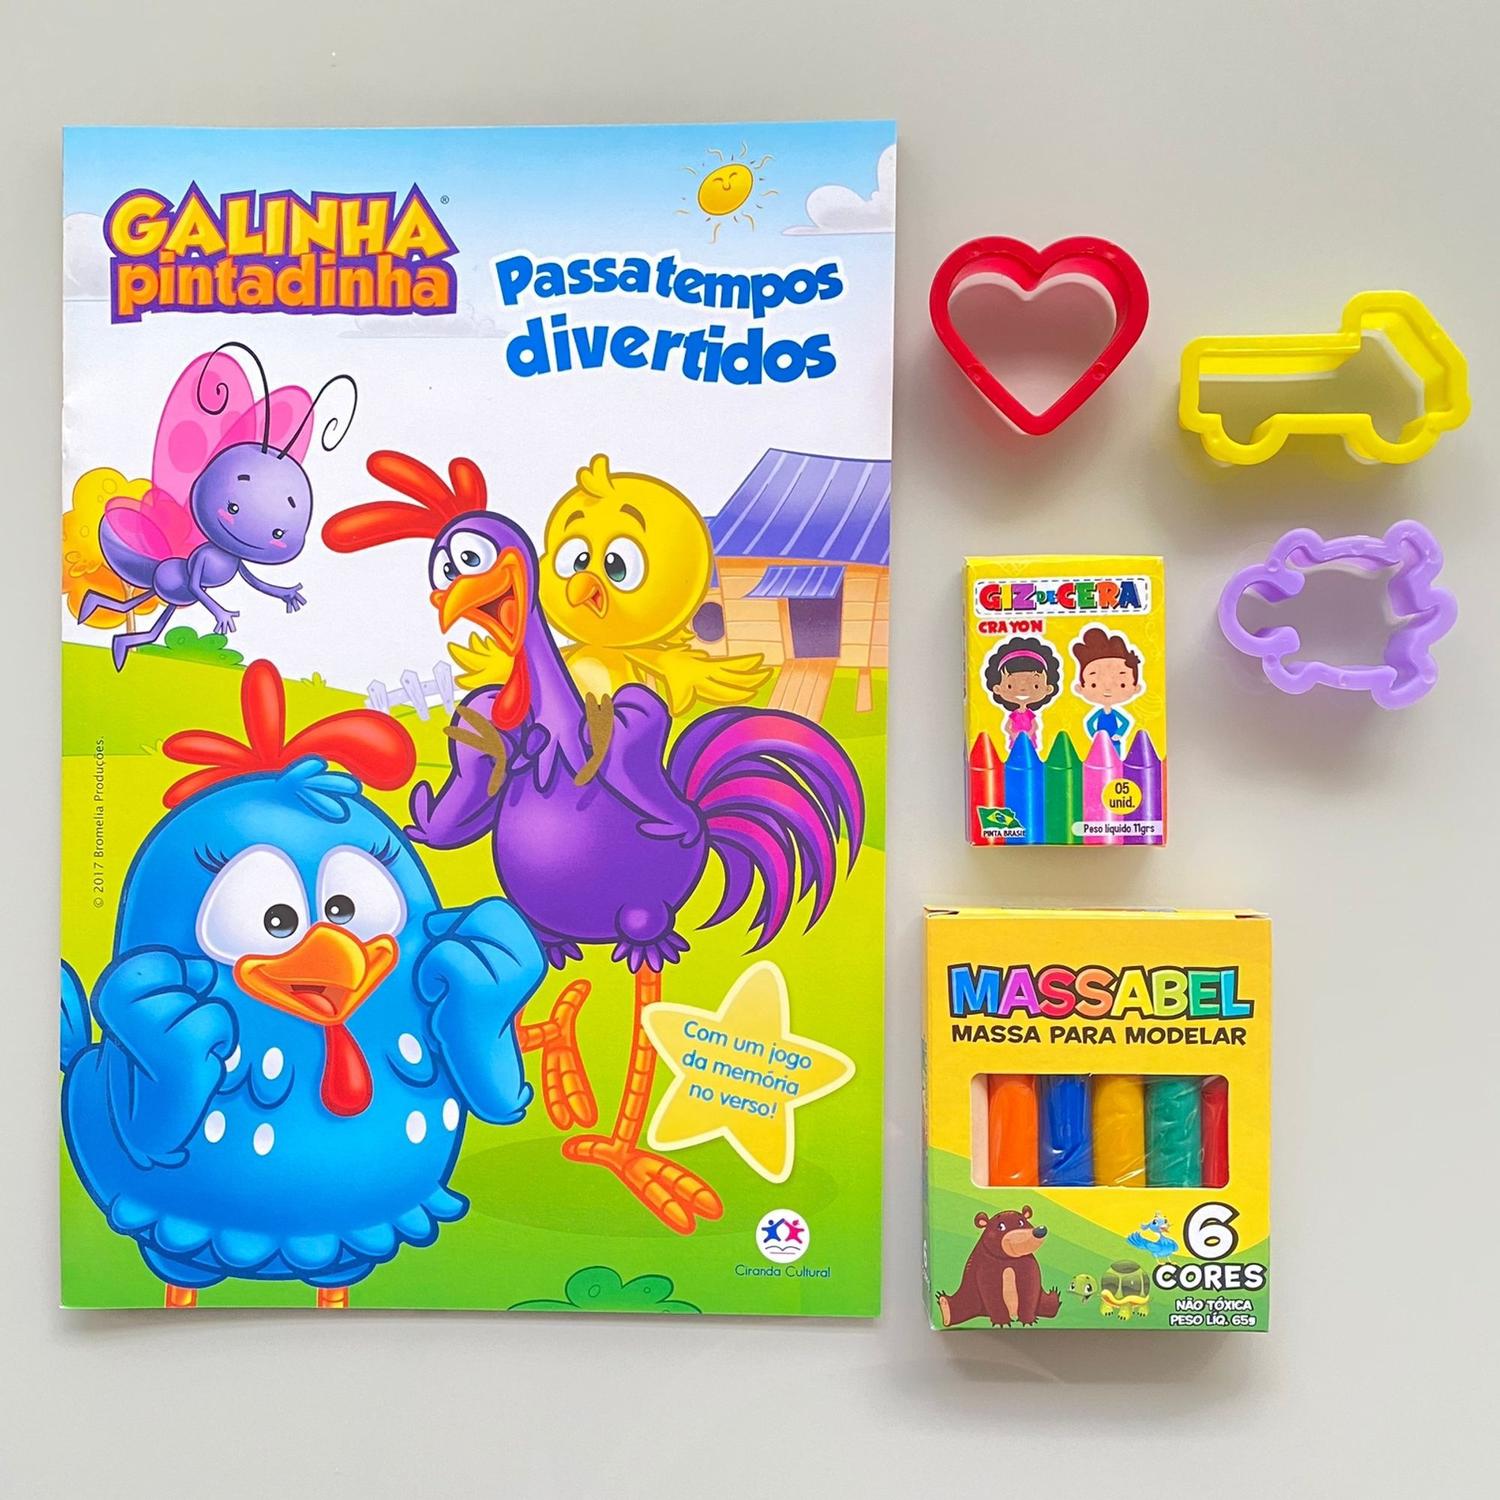 Lembrancinha de aniversário para Colorir Livro Infantil Galinha Pintadinha